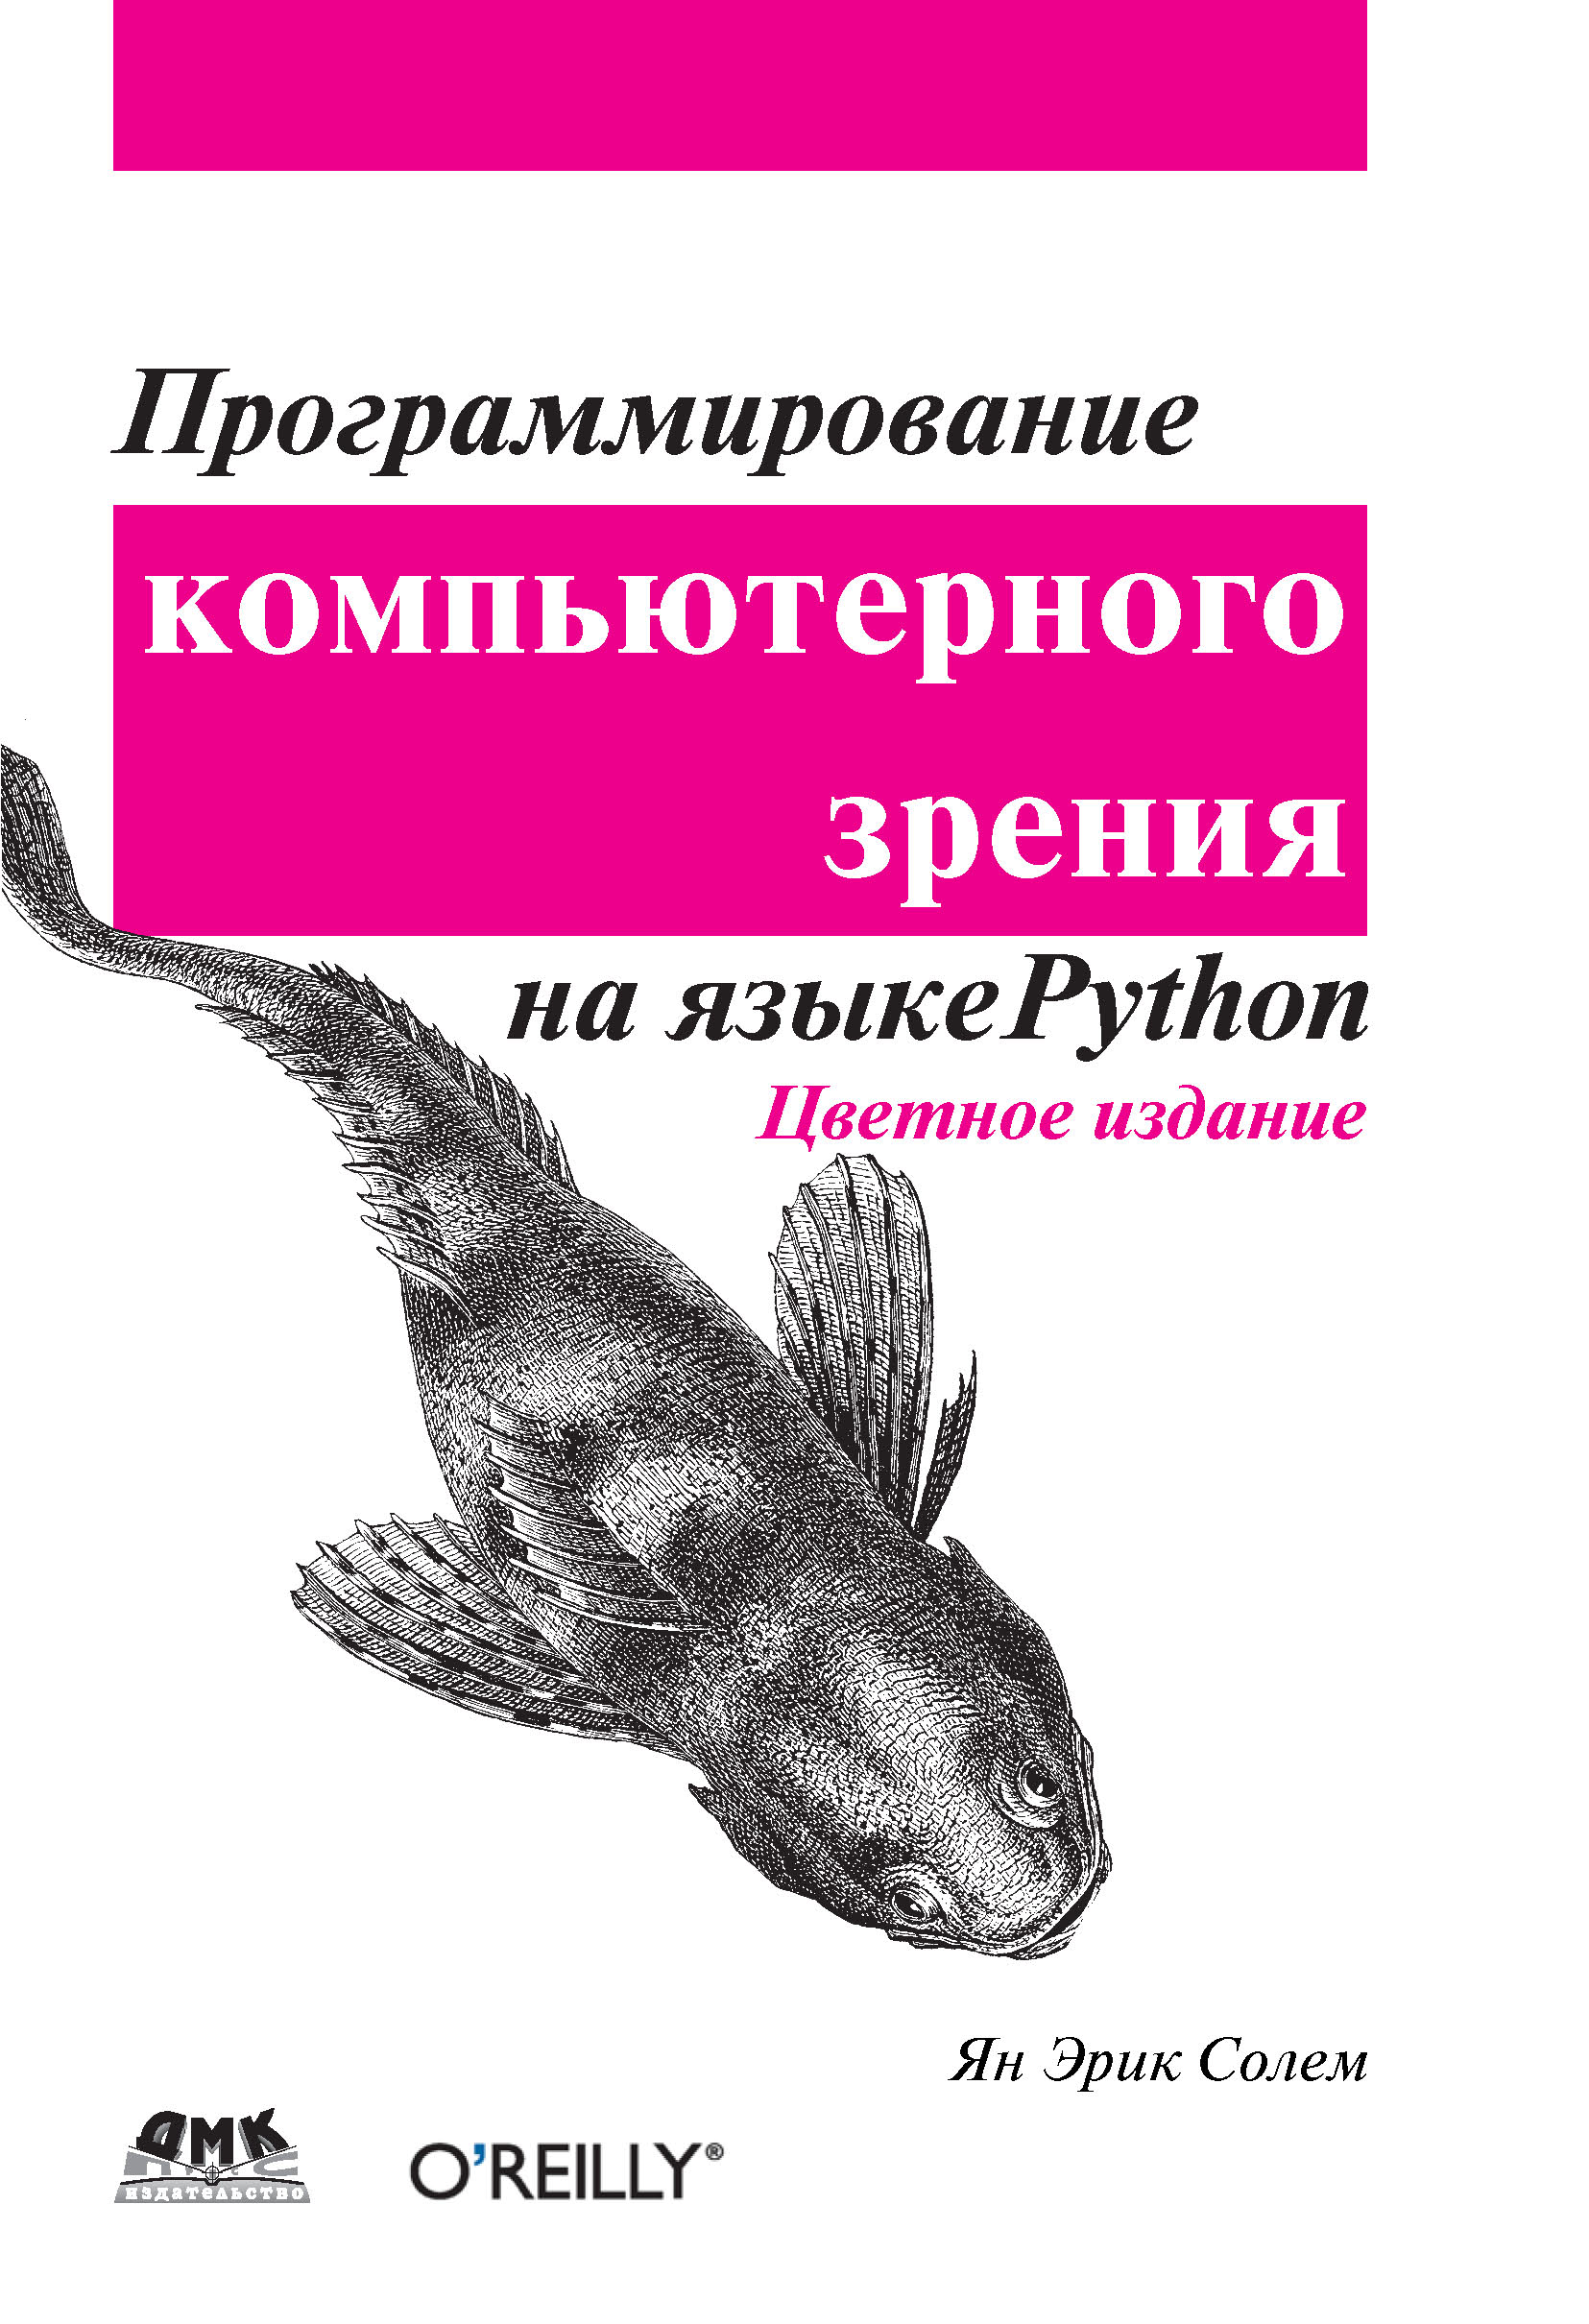 Питон книга программирование. Программирование компьютерного зрения на языке Python. Книги по программированию. Книги про программирование. Программирование на питон книга.